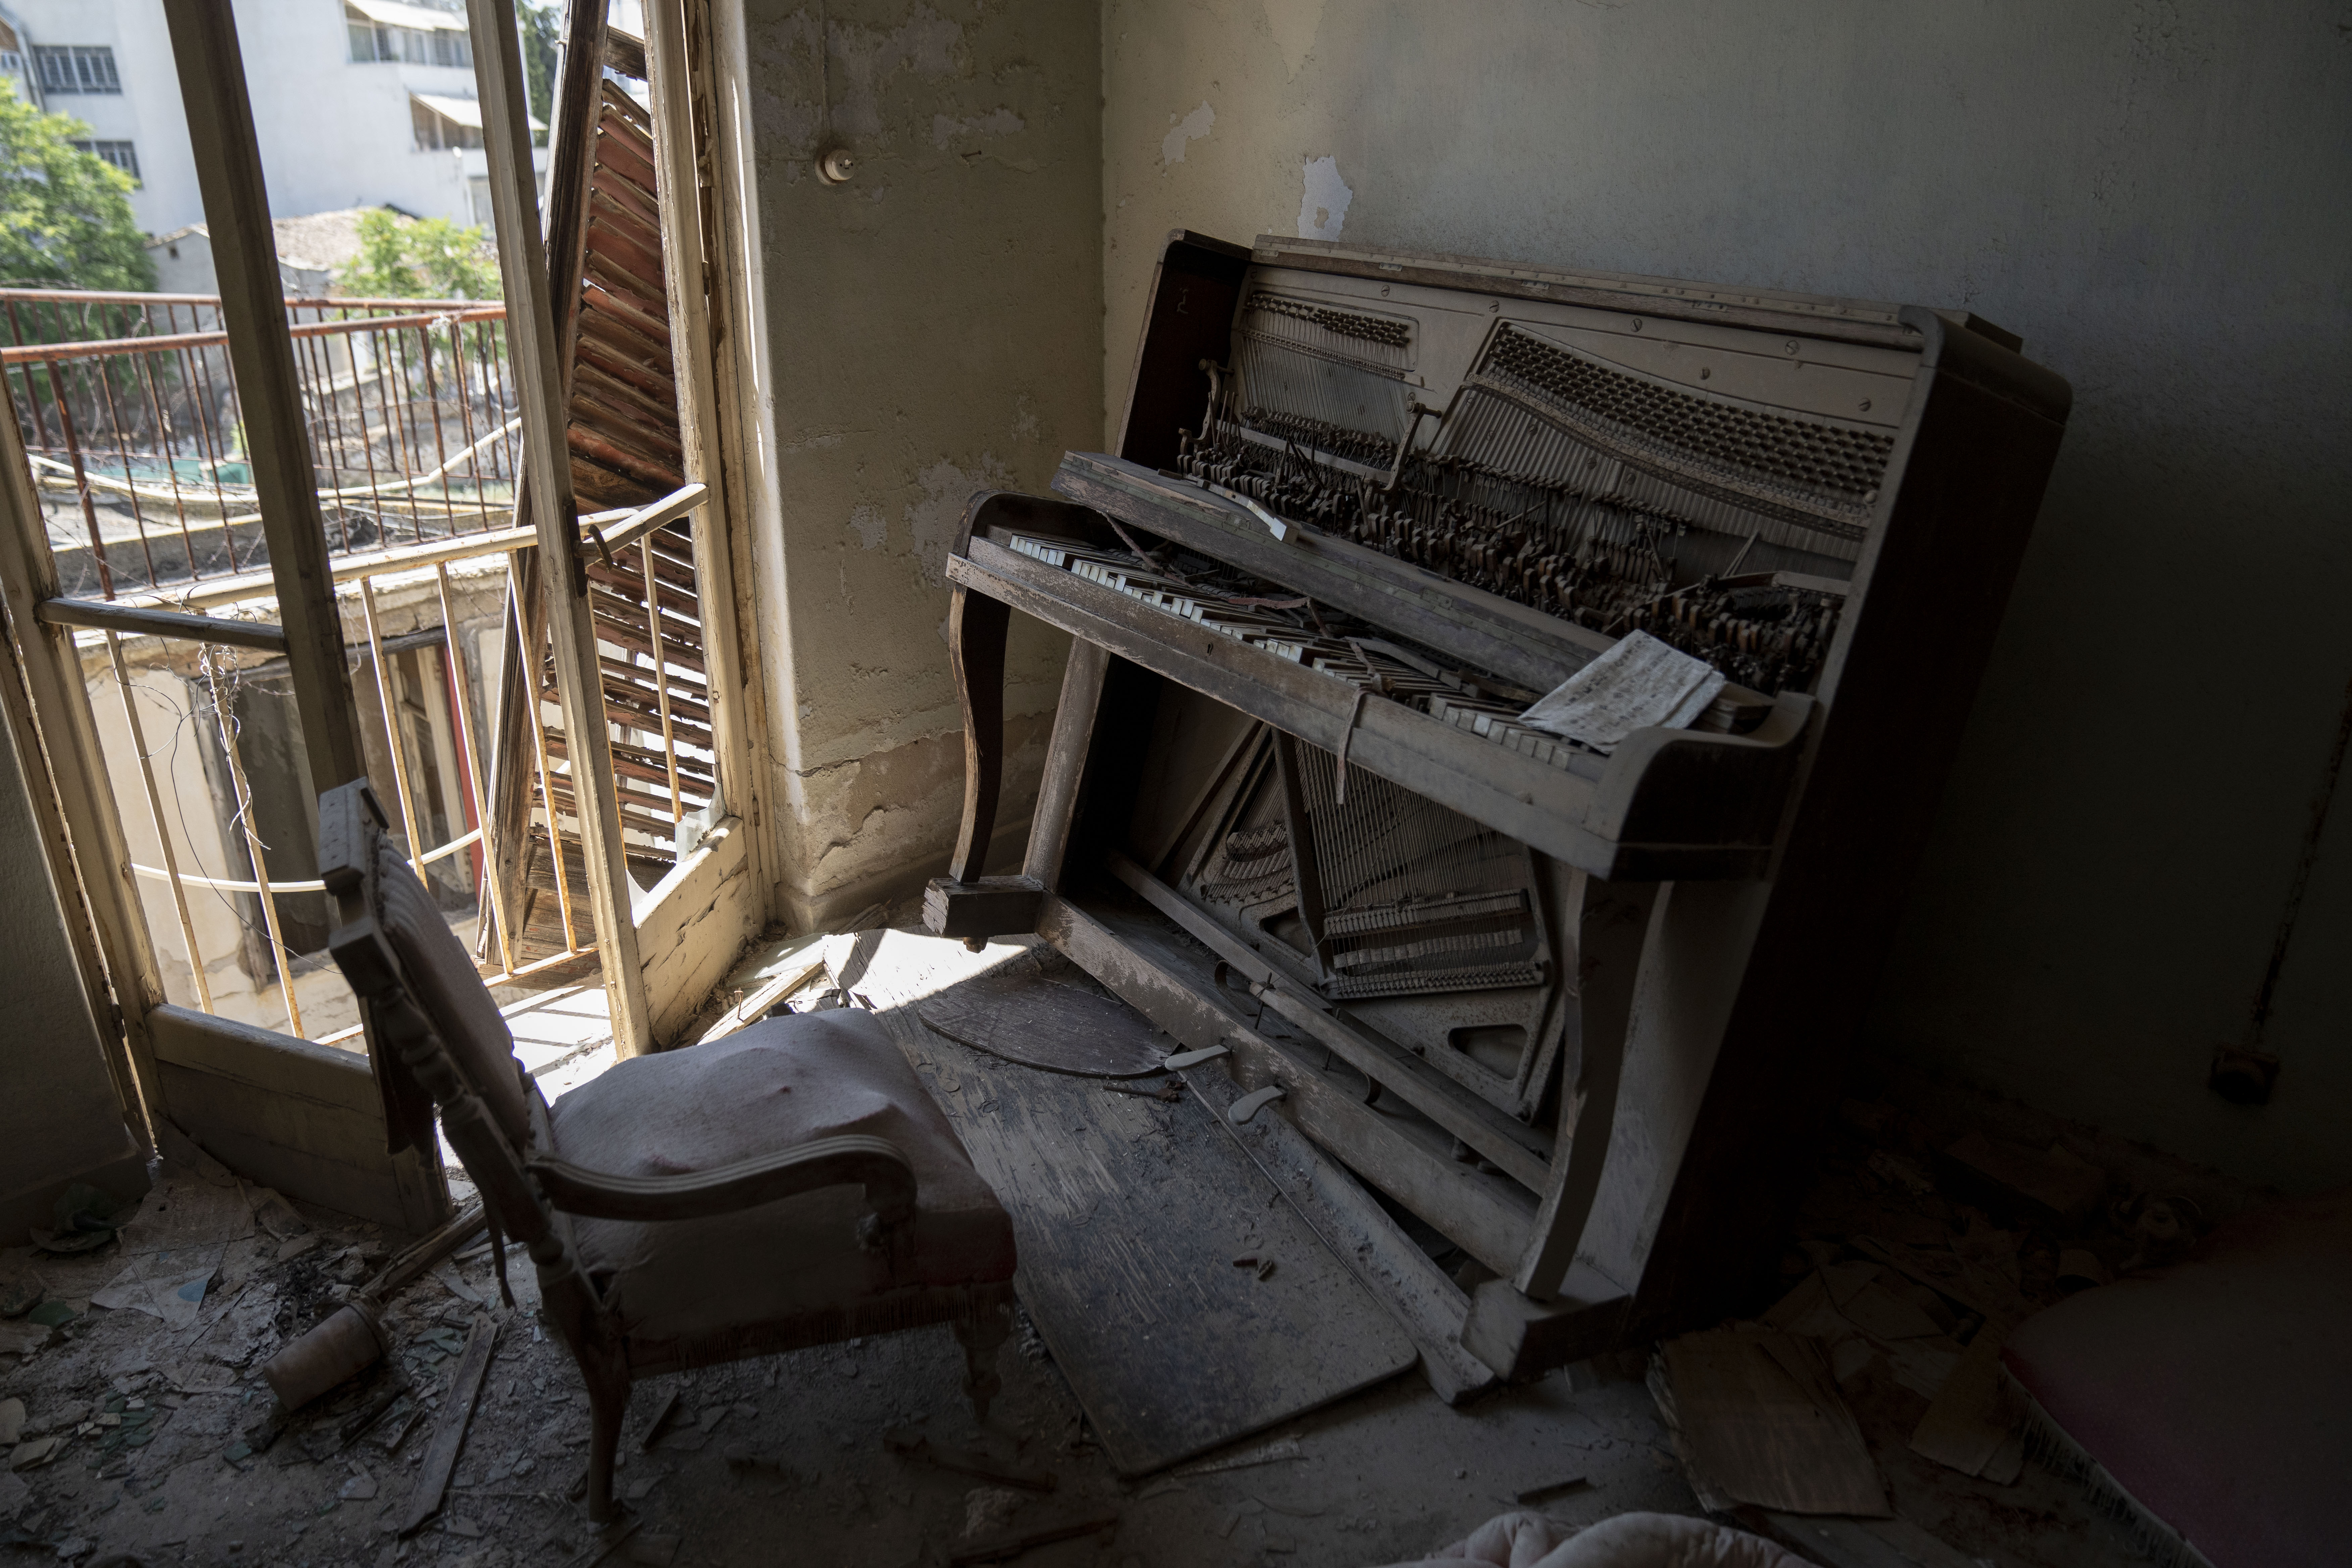 Unheimliche Bilder zeigen verlassene Wohnungen, in denen die Zeit stehengeblieben ist